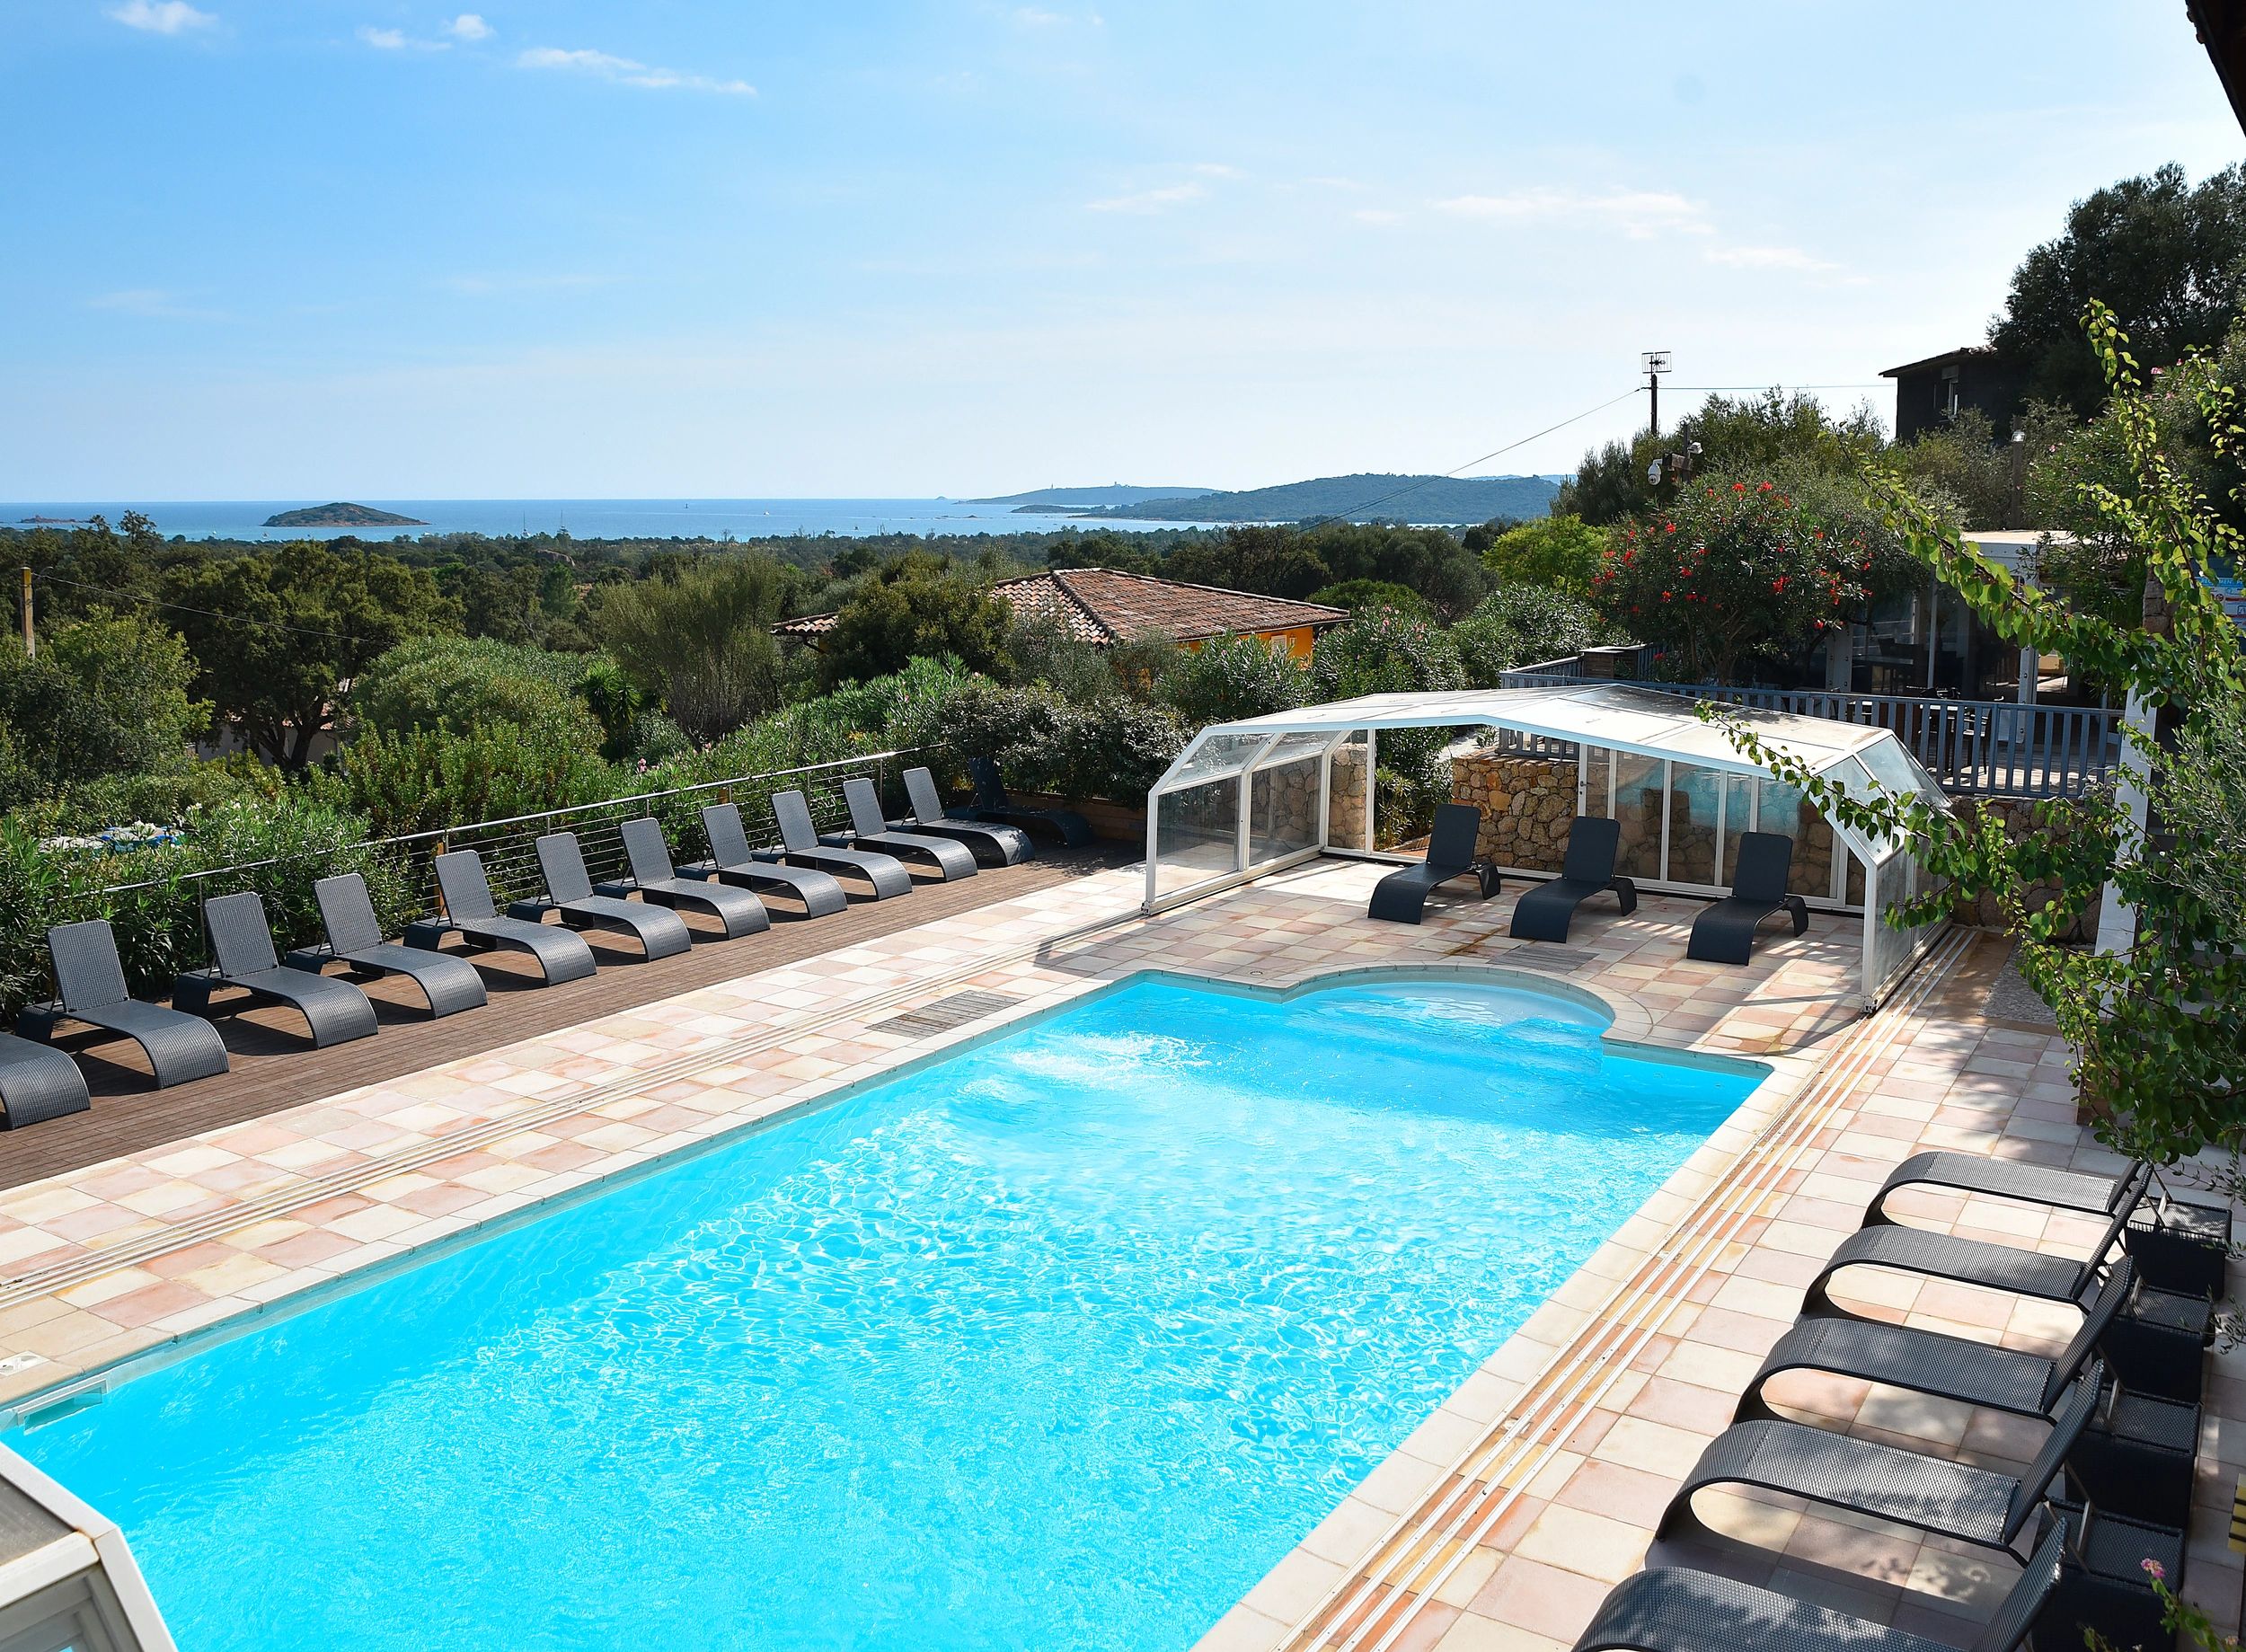 La piscine couverte de la résidence 4 étoiles à Porto-Vecchio